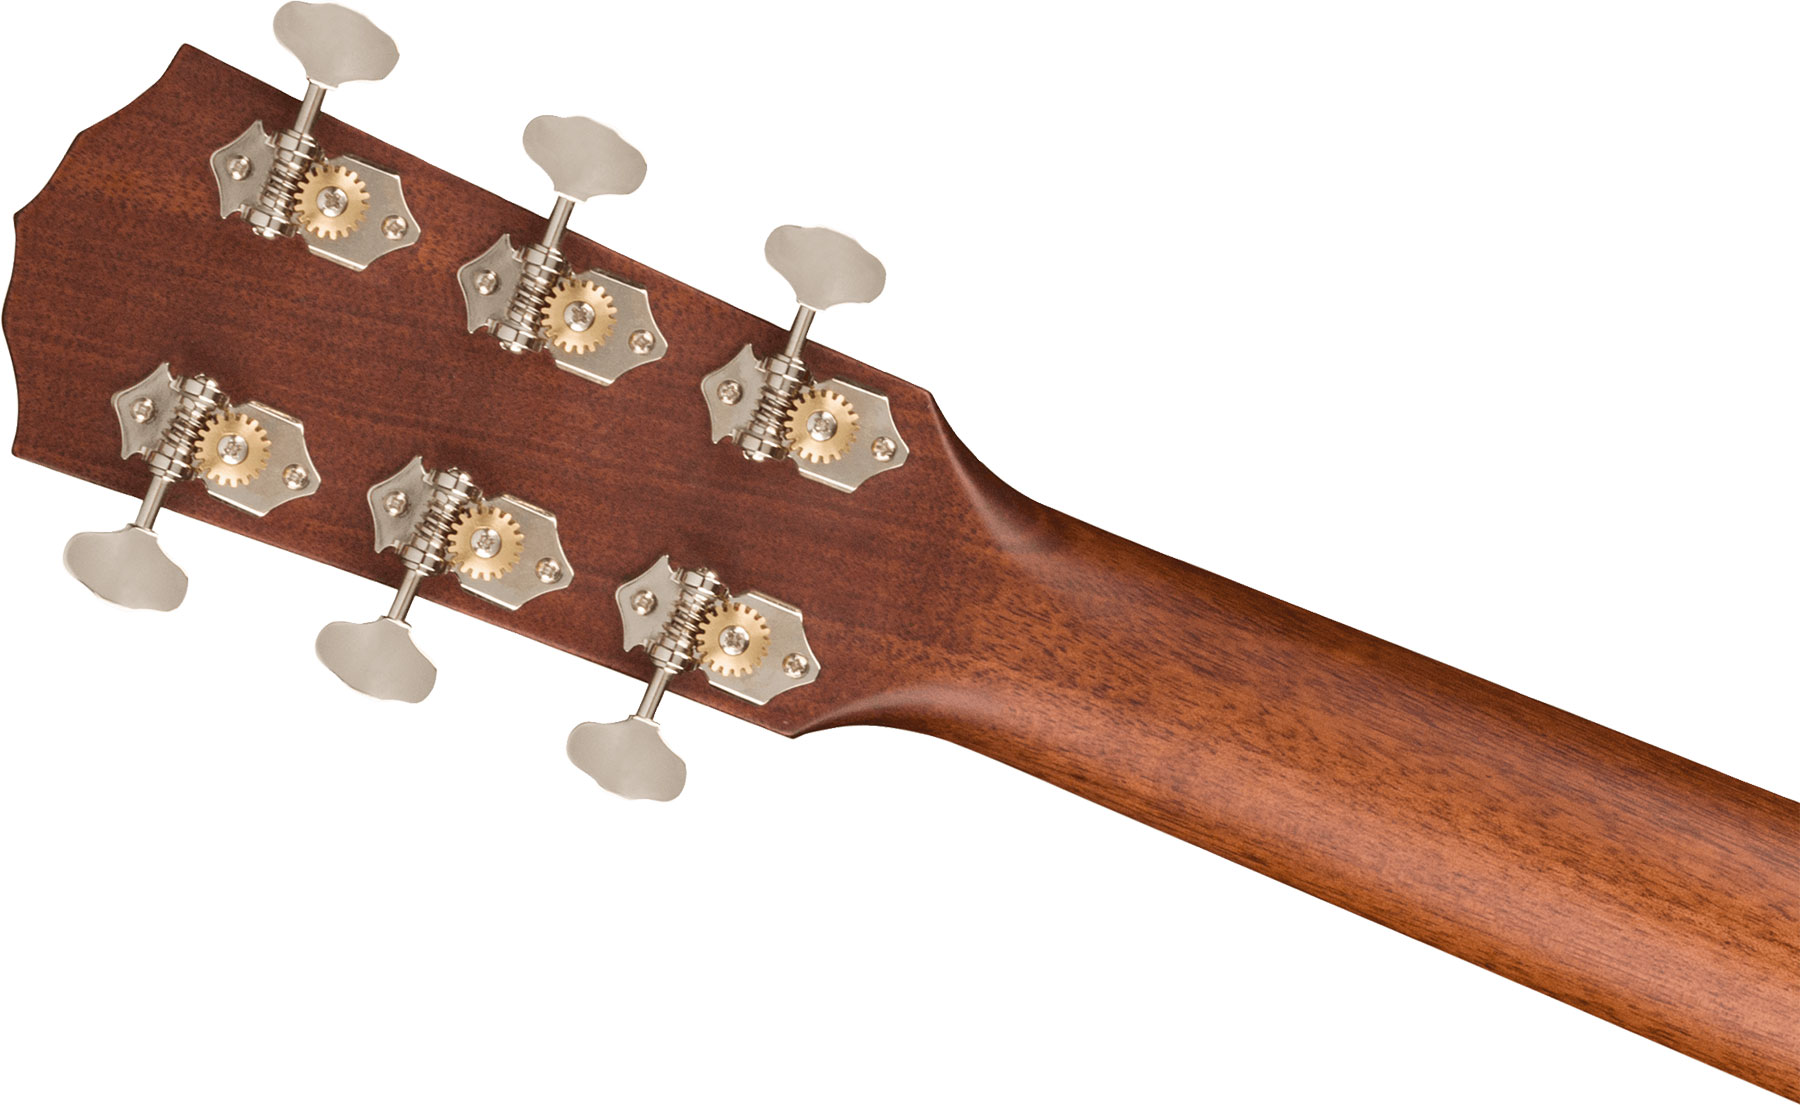 Fender Po-220e Paramount Orchestra Model Om Acajou Ova - Natural - Elektroakustische Gitarre - Variation 2